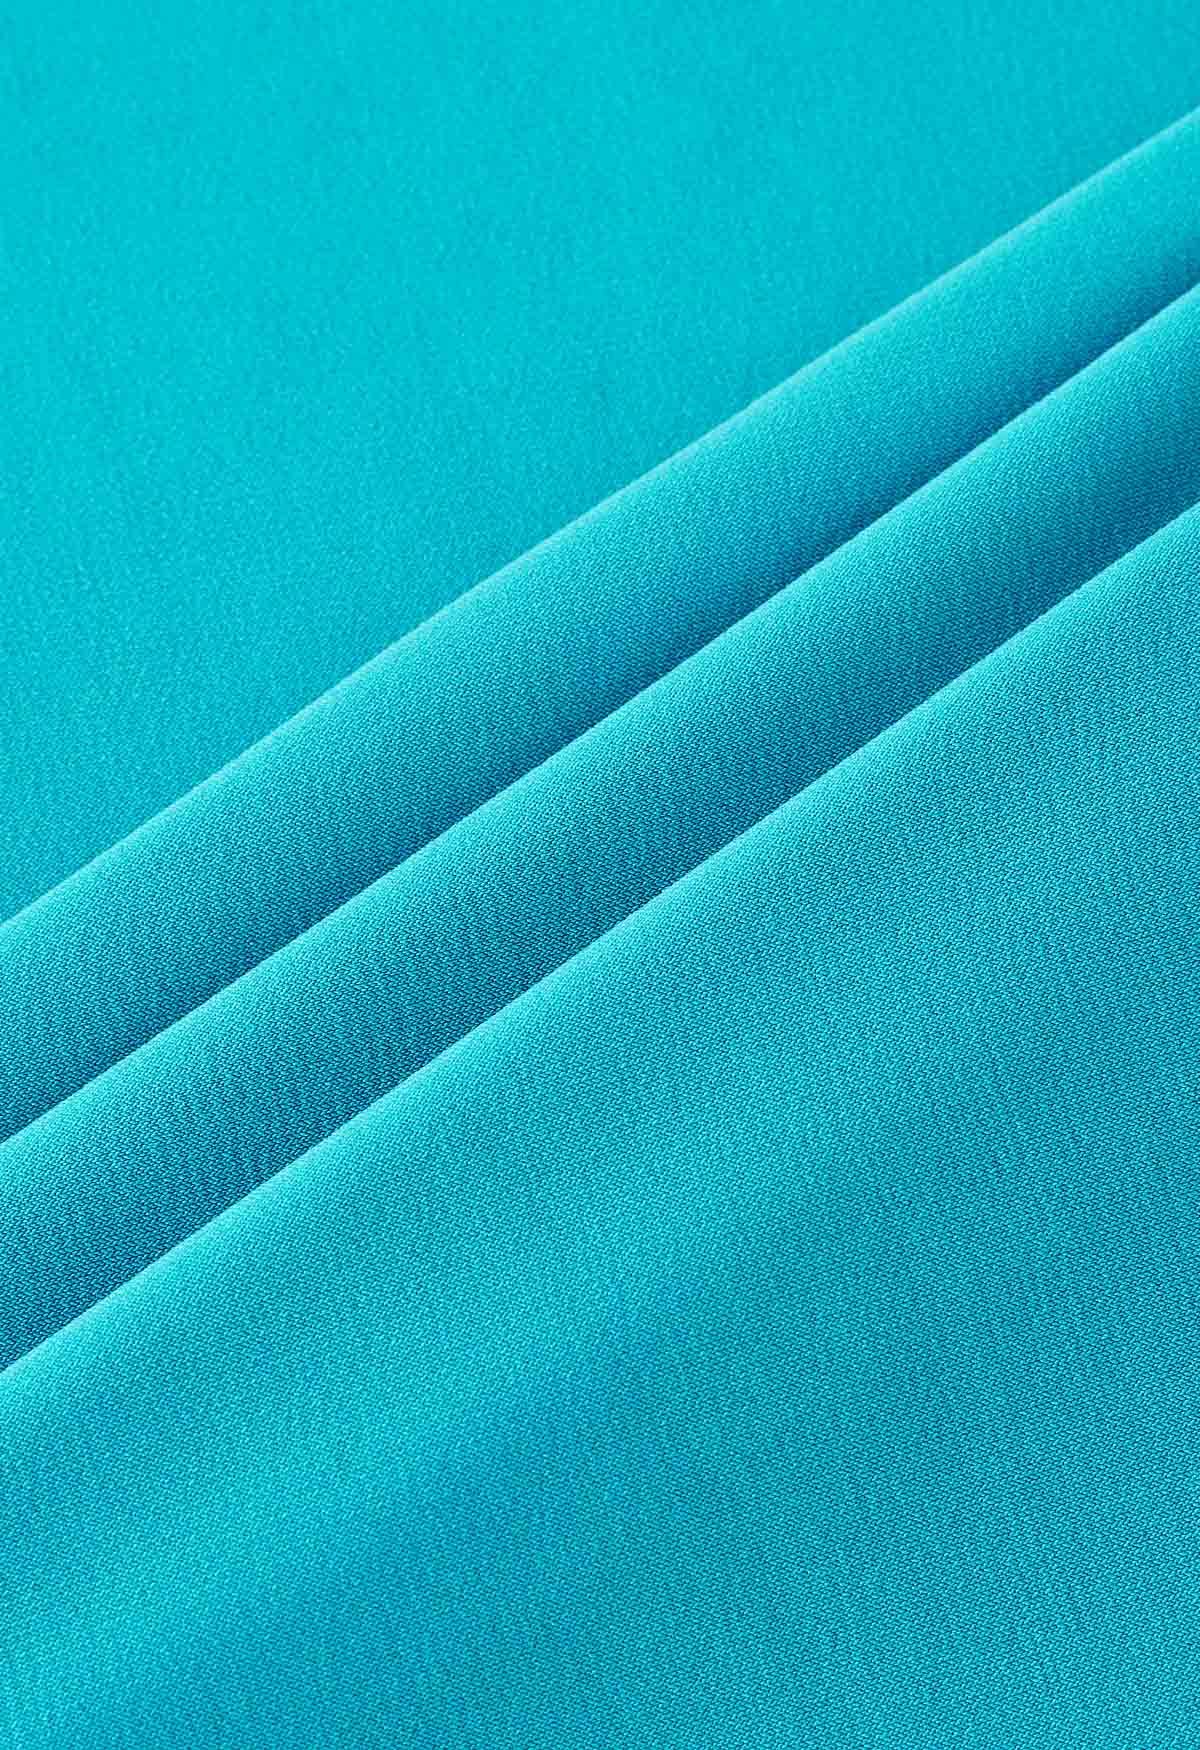 Falda larga cómoda de color sólido en azul